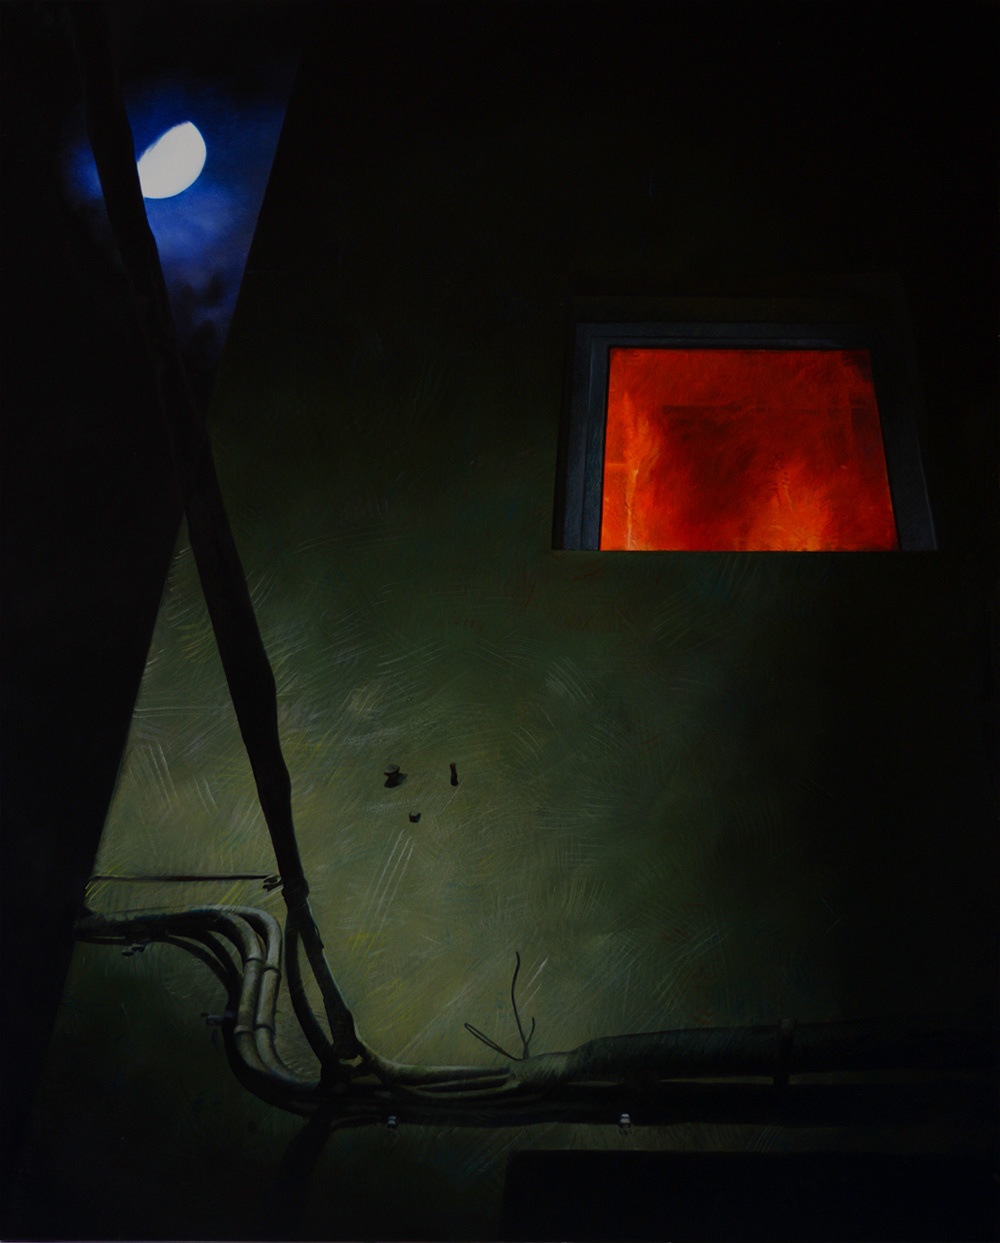 
'Notturno'
(2016)
olio su tela,
100x80 cm
